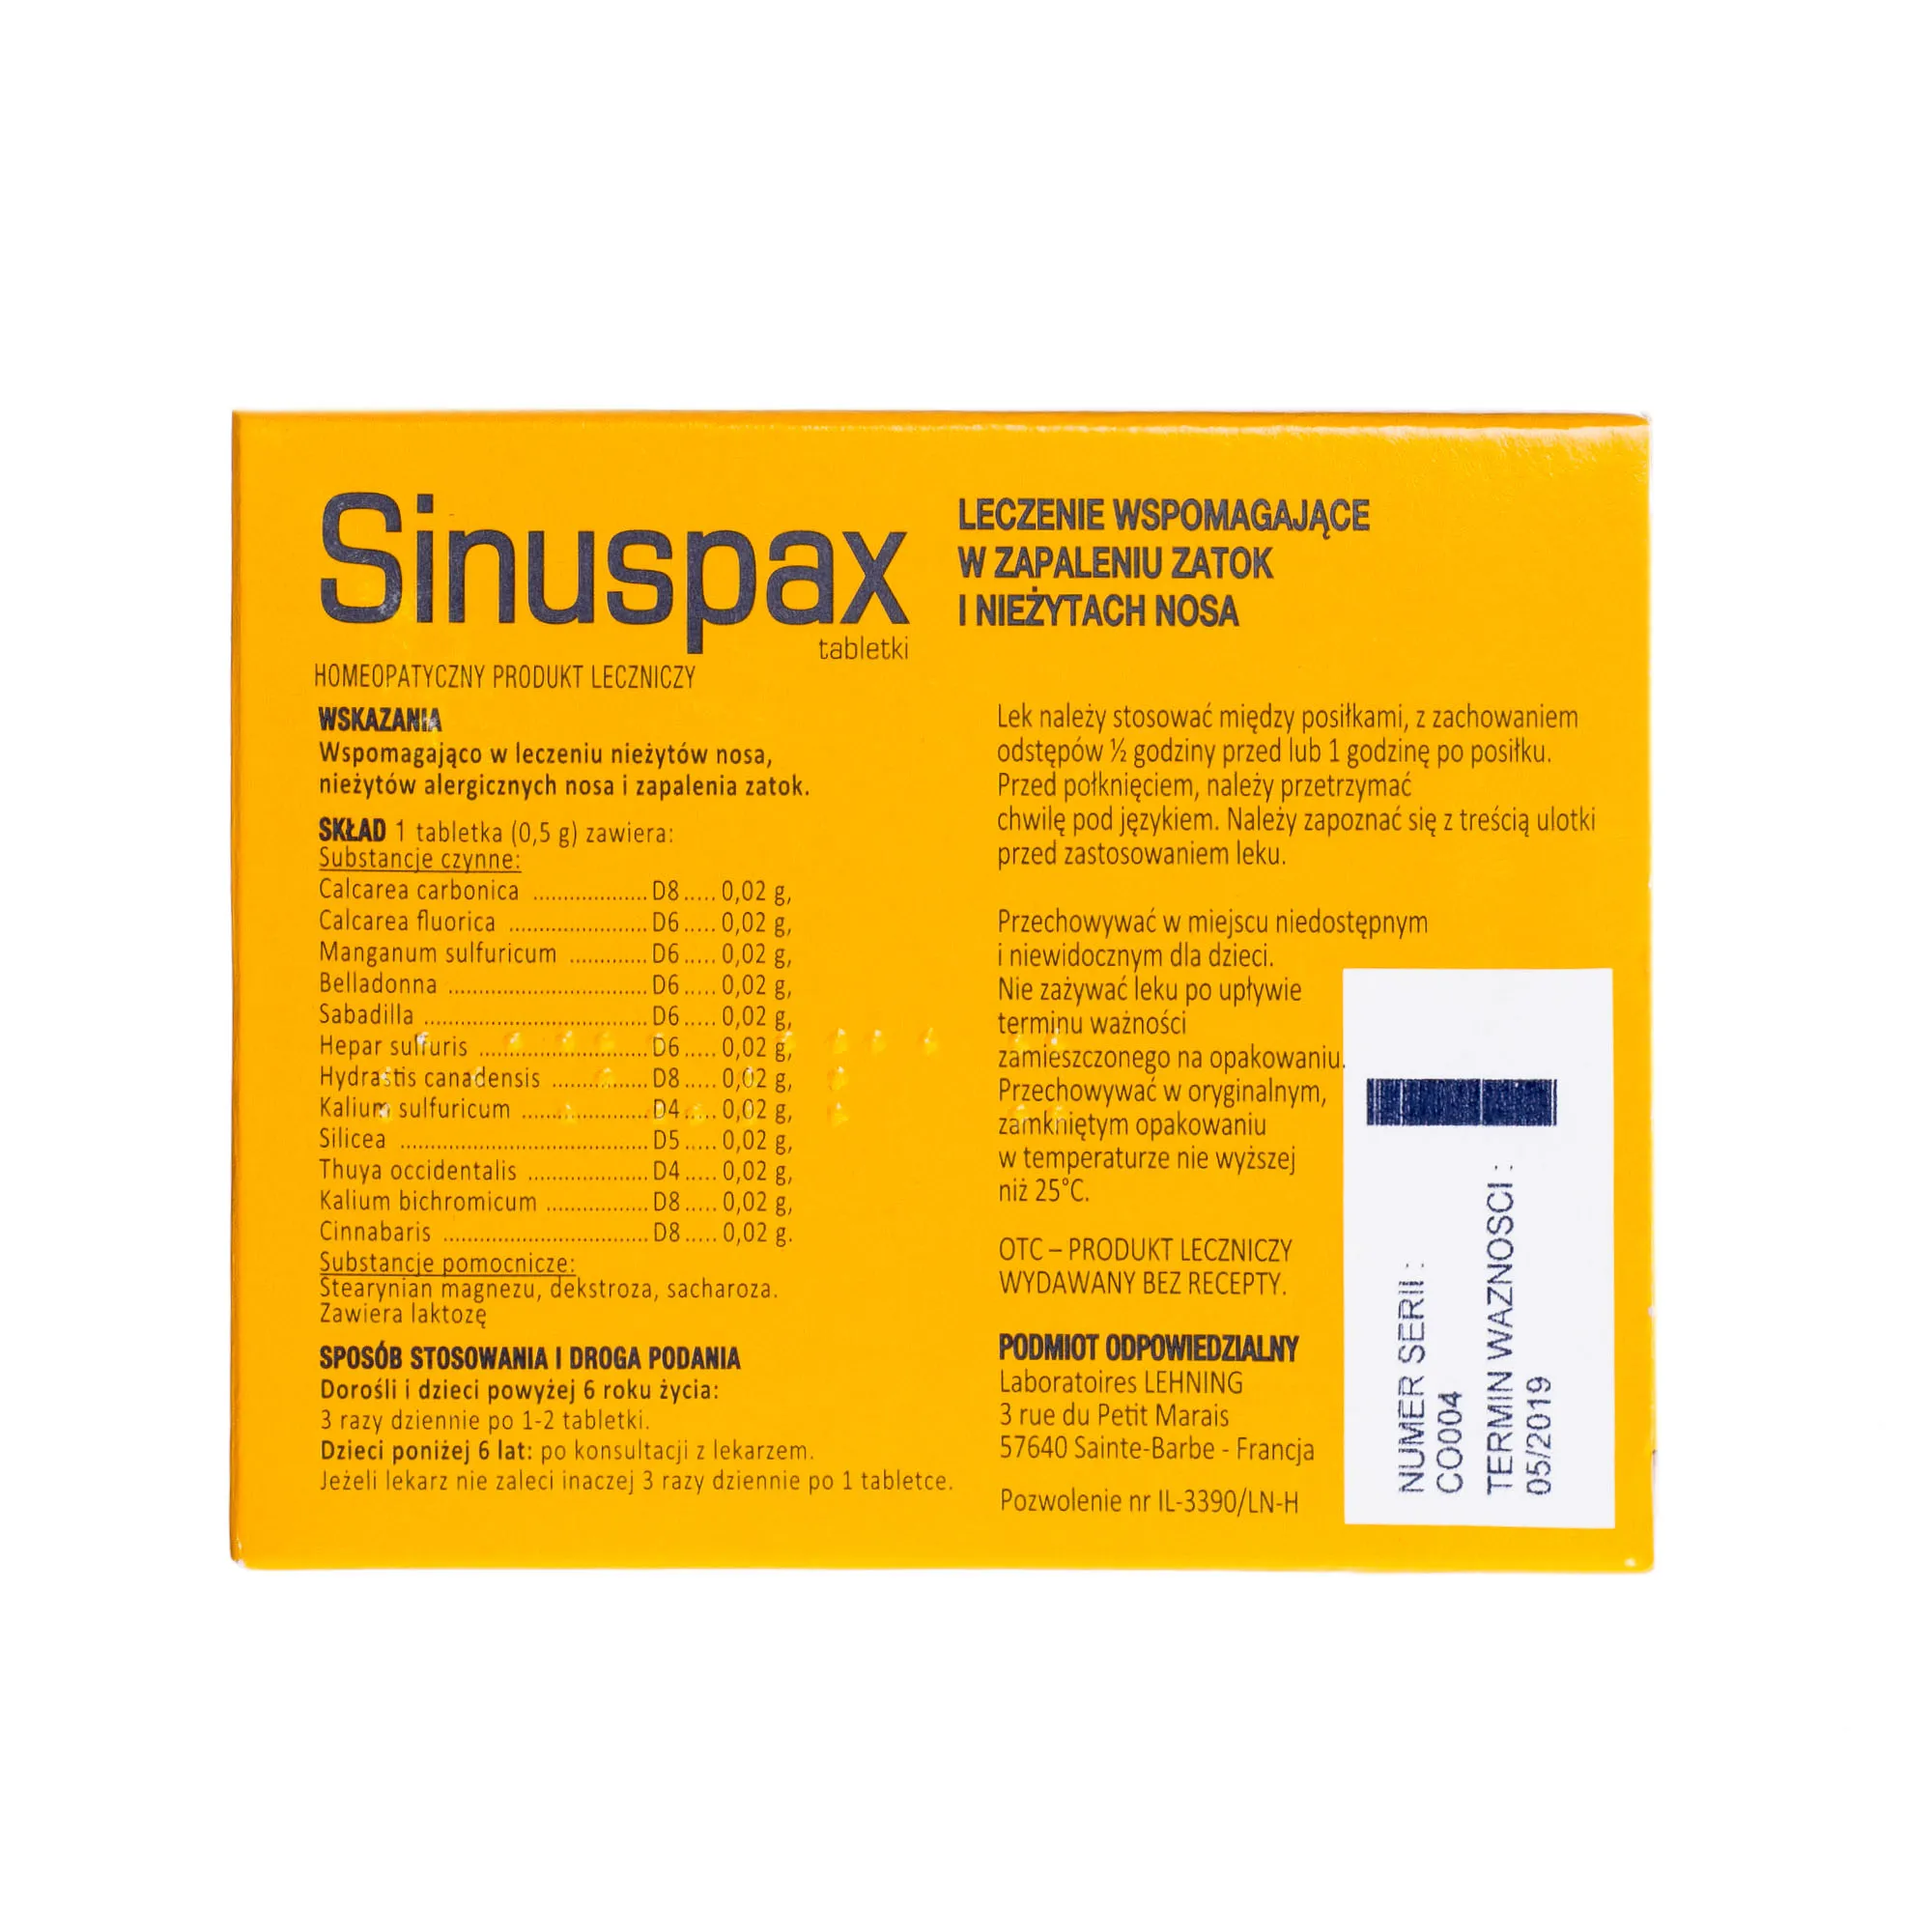 Lehning Sinuspax Dorośli i dzieci, homeopatyczny produkt leczniczy, 60 tabletek 